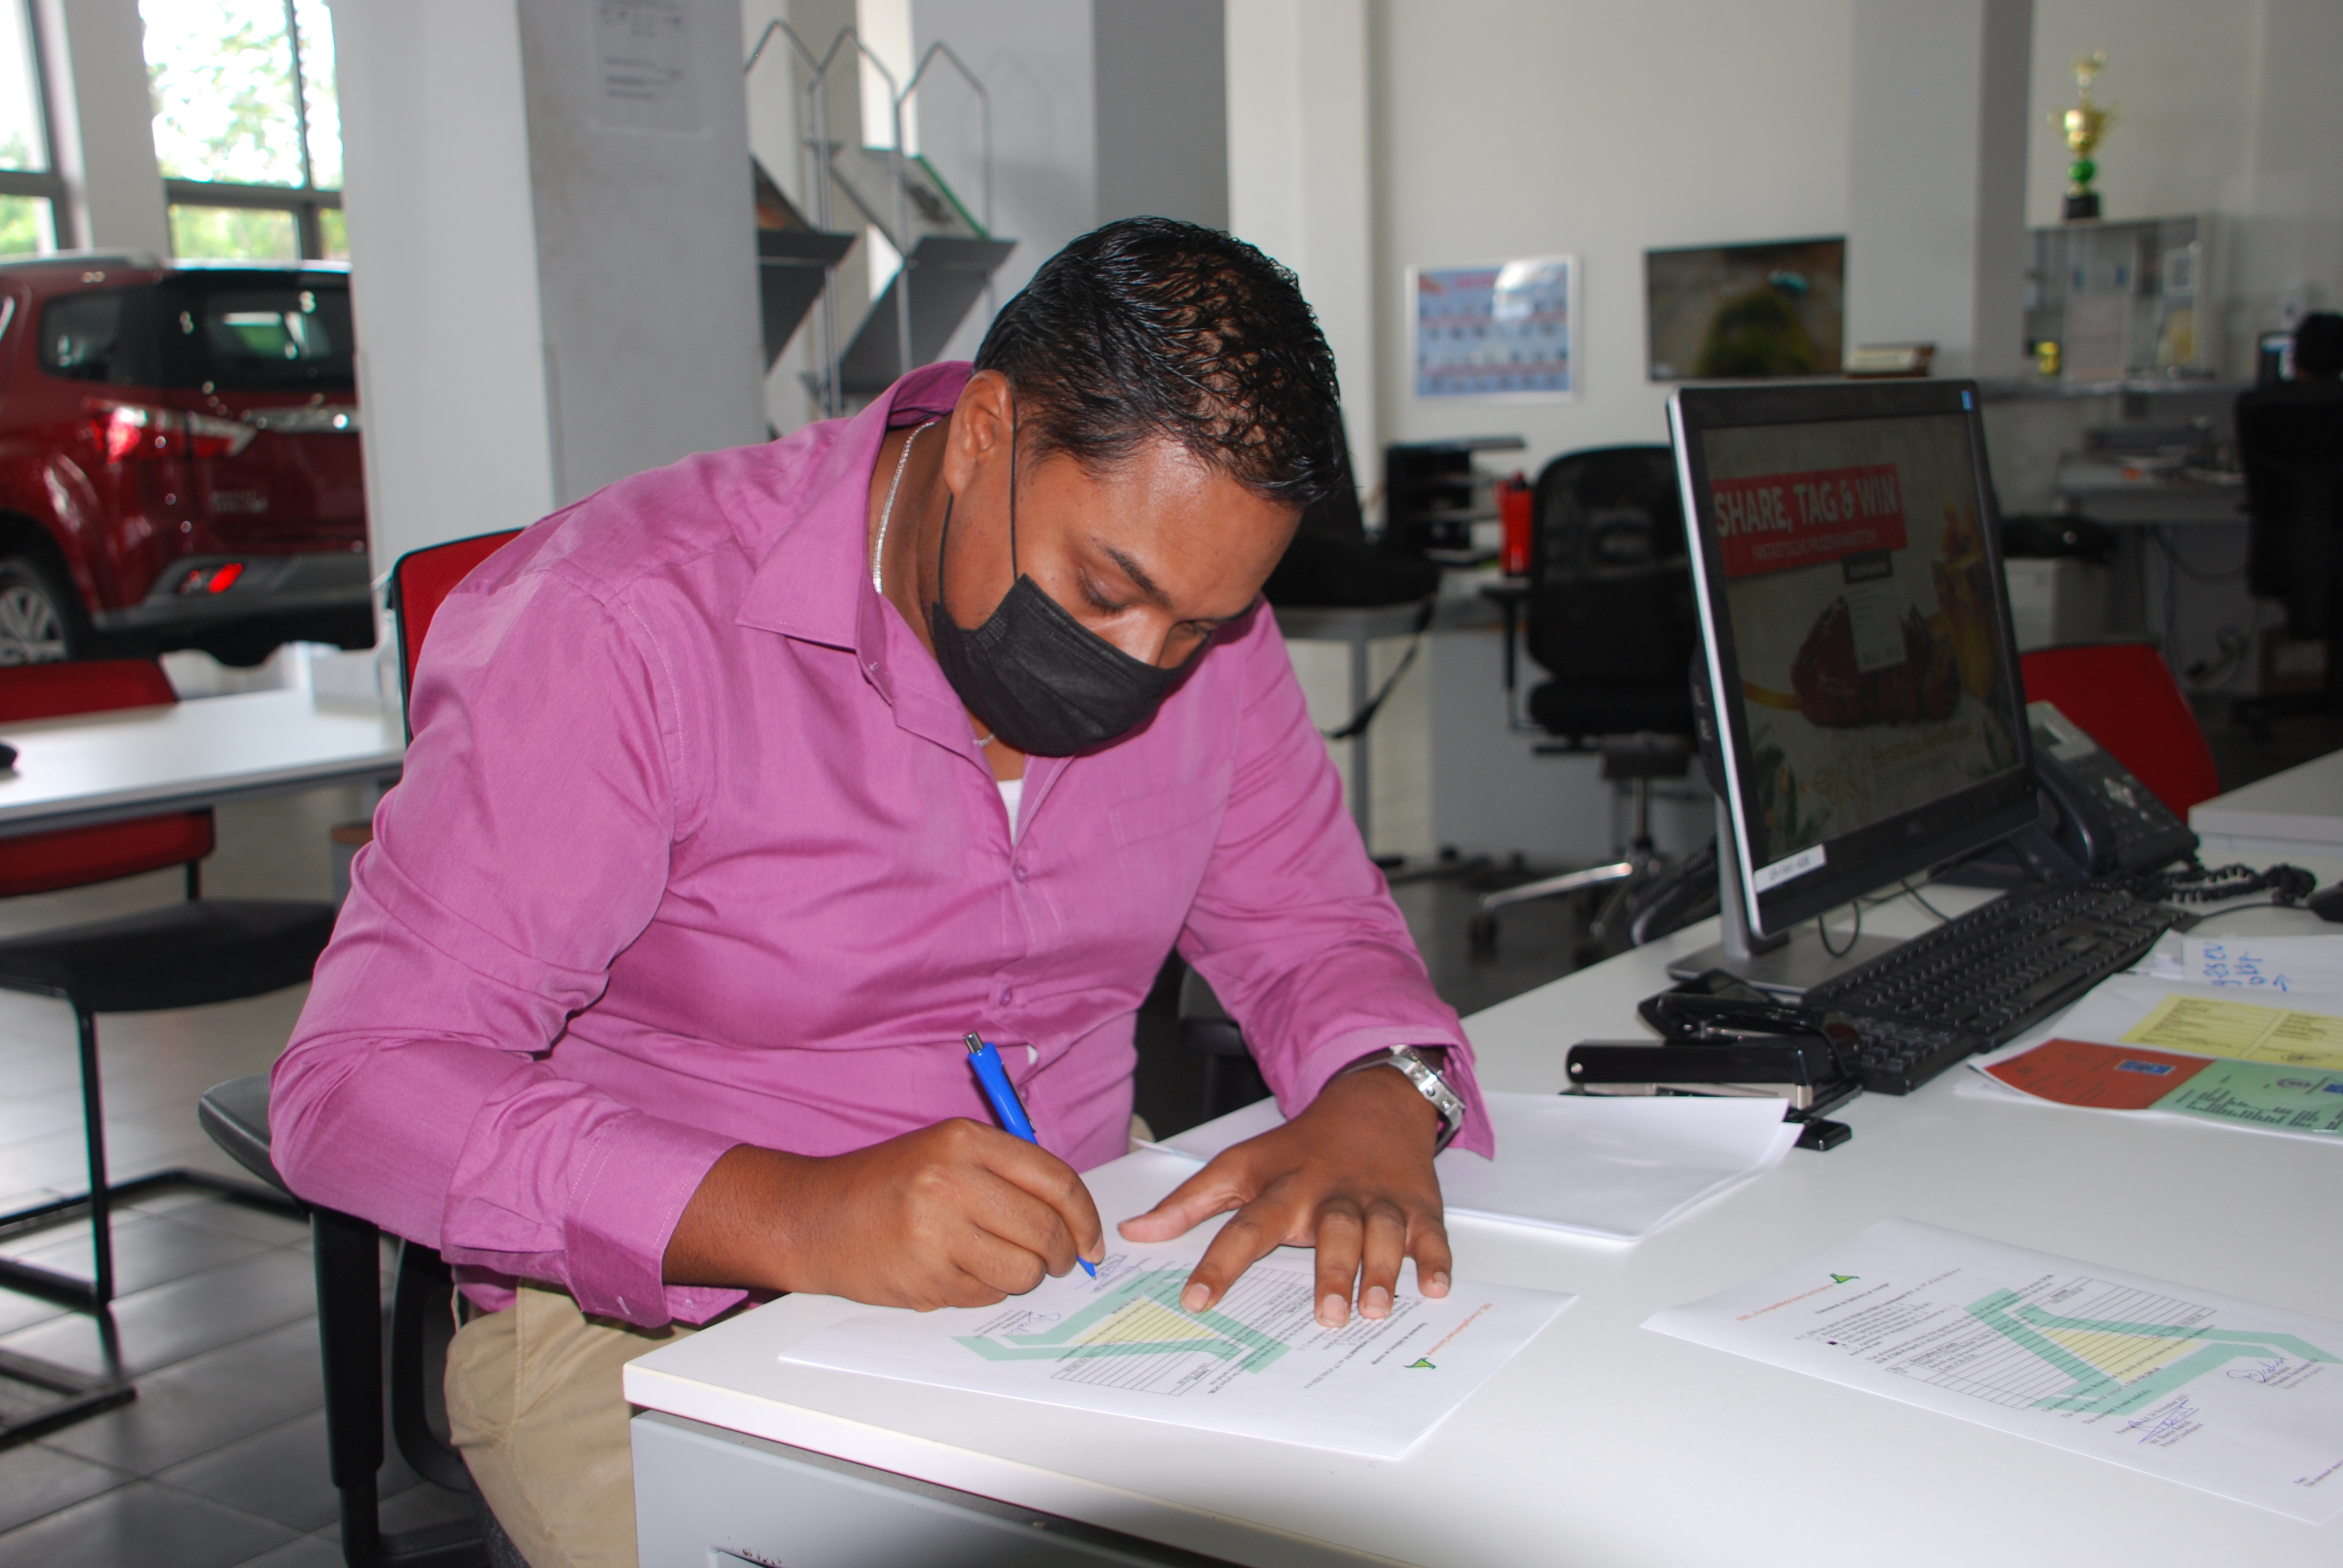 Foto: Shamir Bakridi zet namens de N.V. EBS, zijn handtekening onder de verkoopdocumenten.